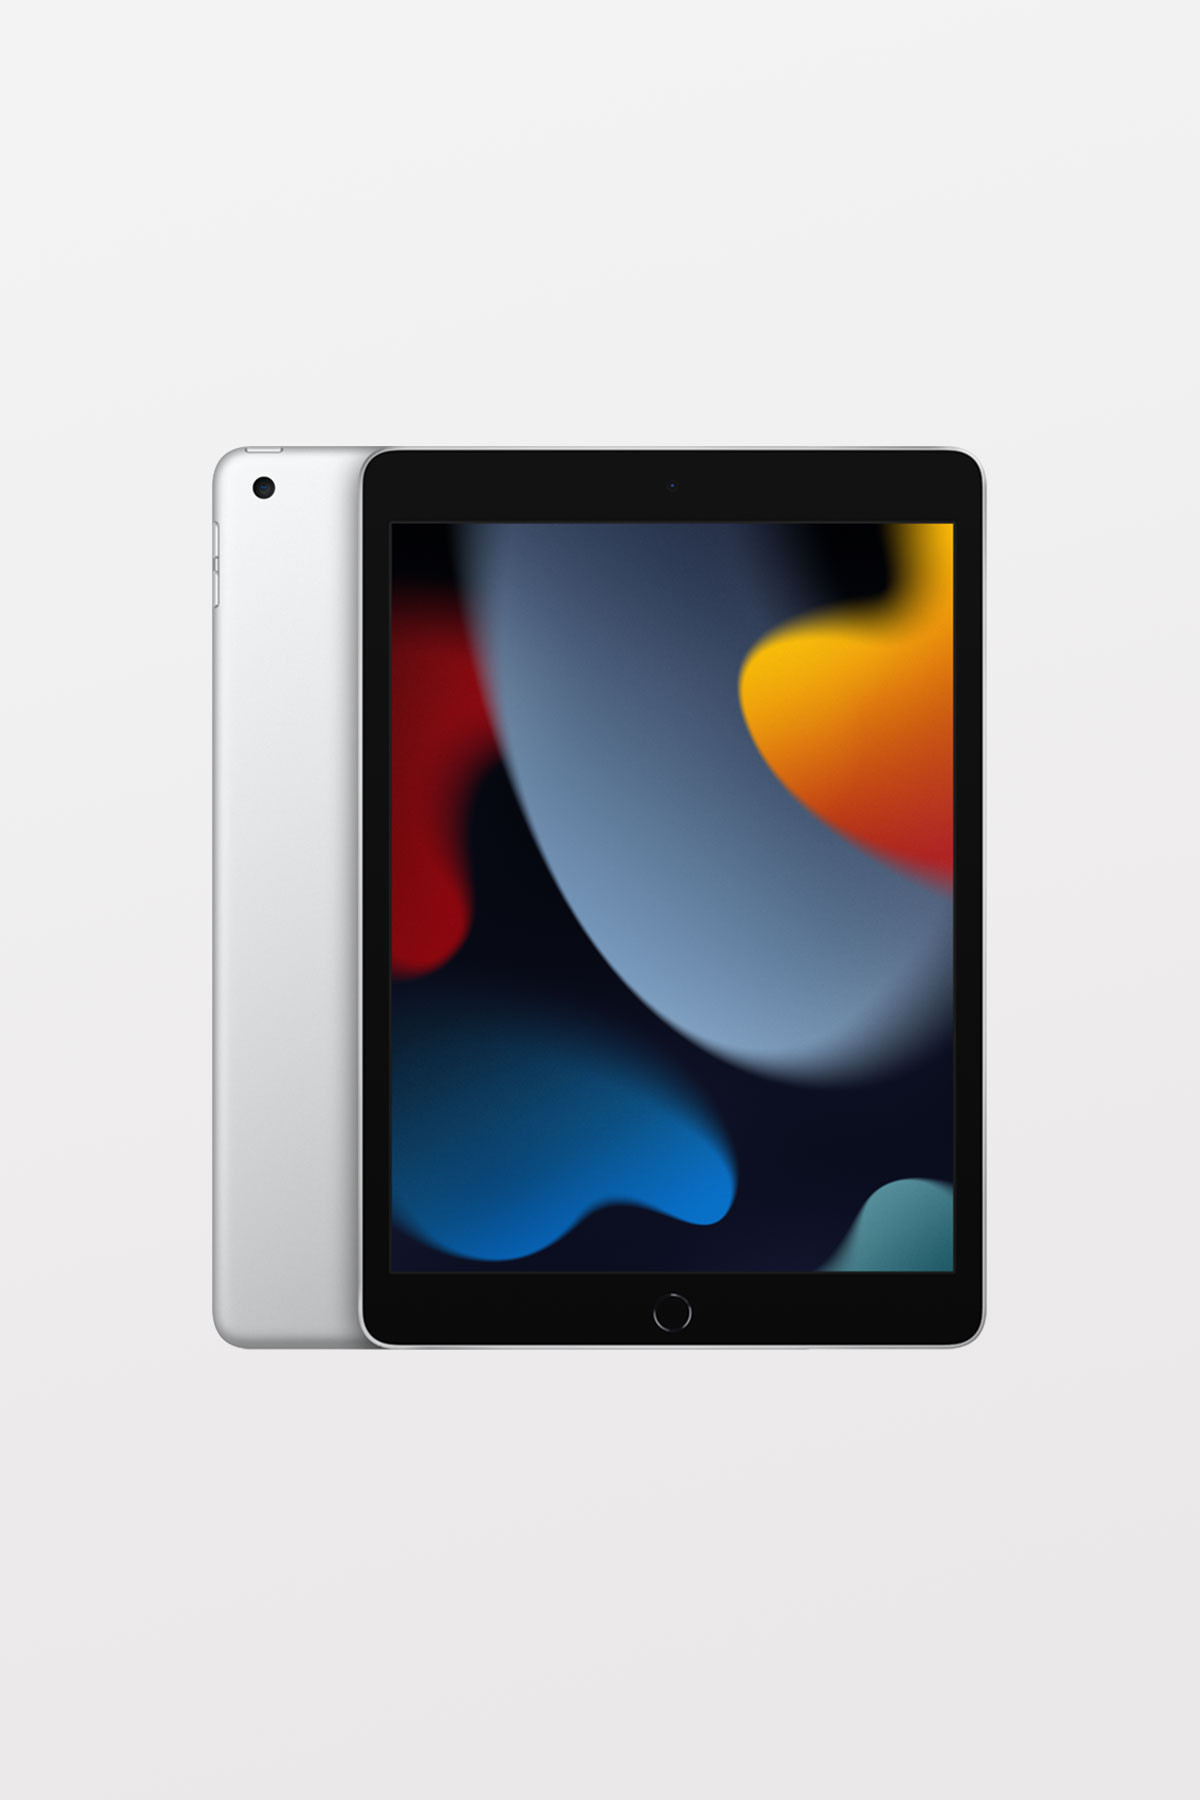 iPad (9th Gen) 10.2-inch Wi-Fi + Cellular 64GB — Silver